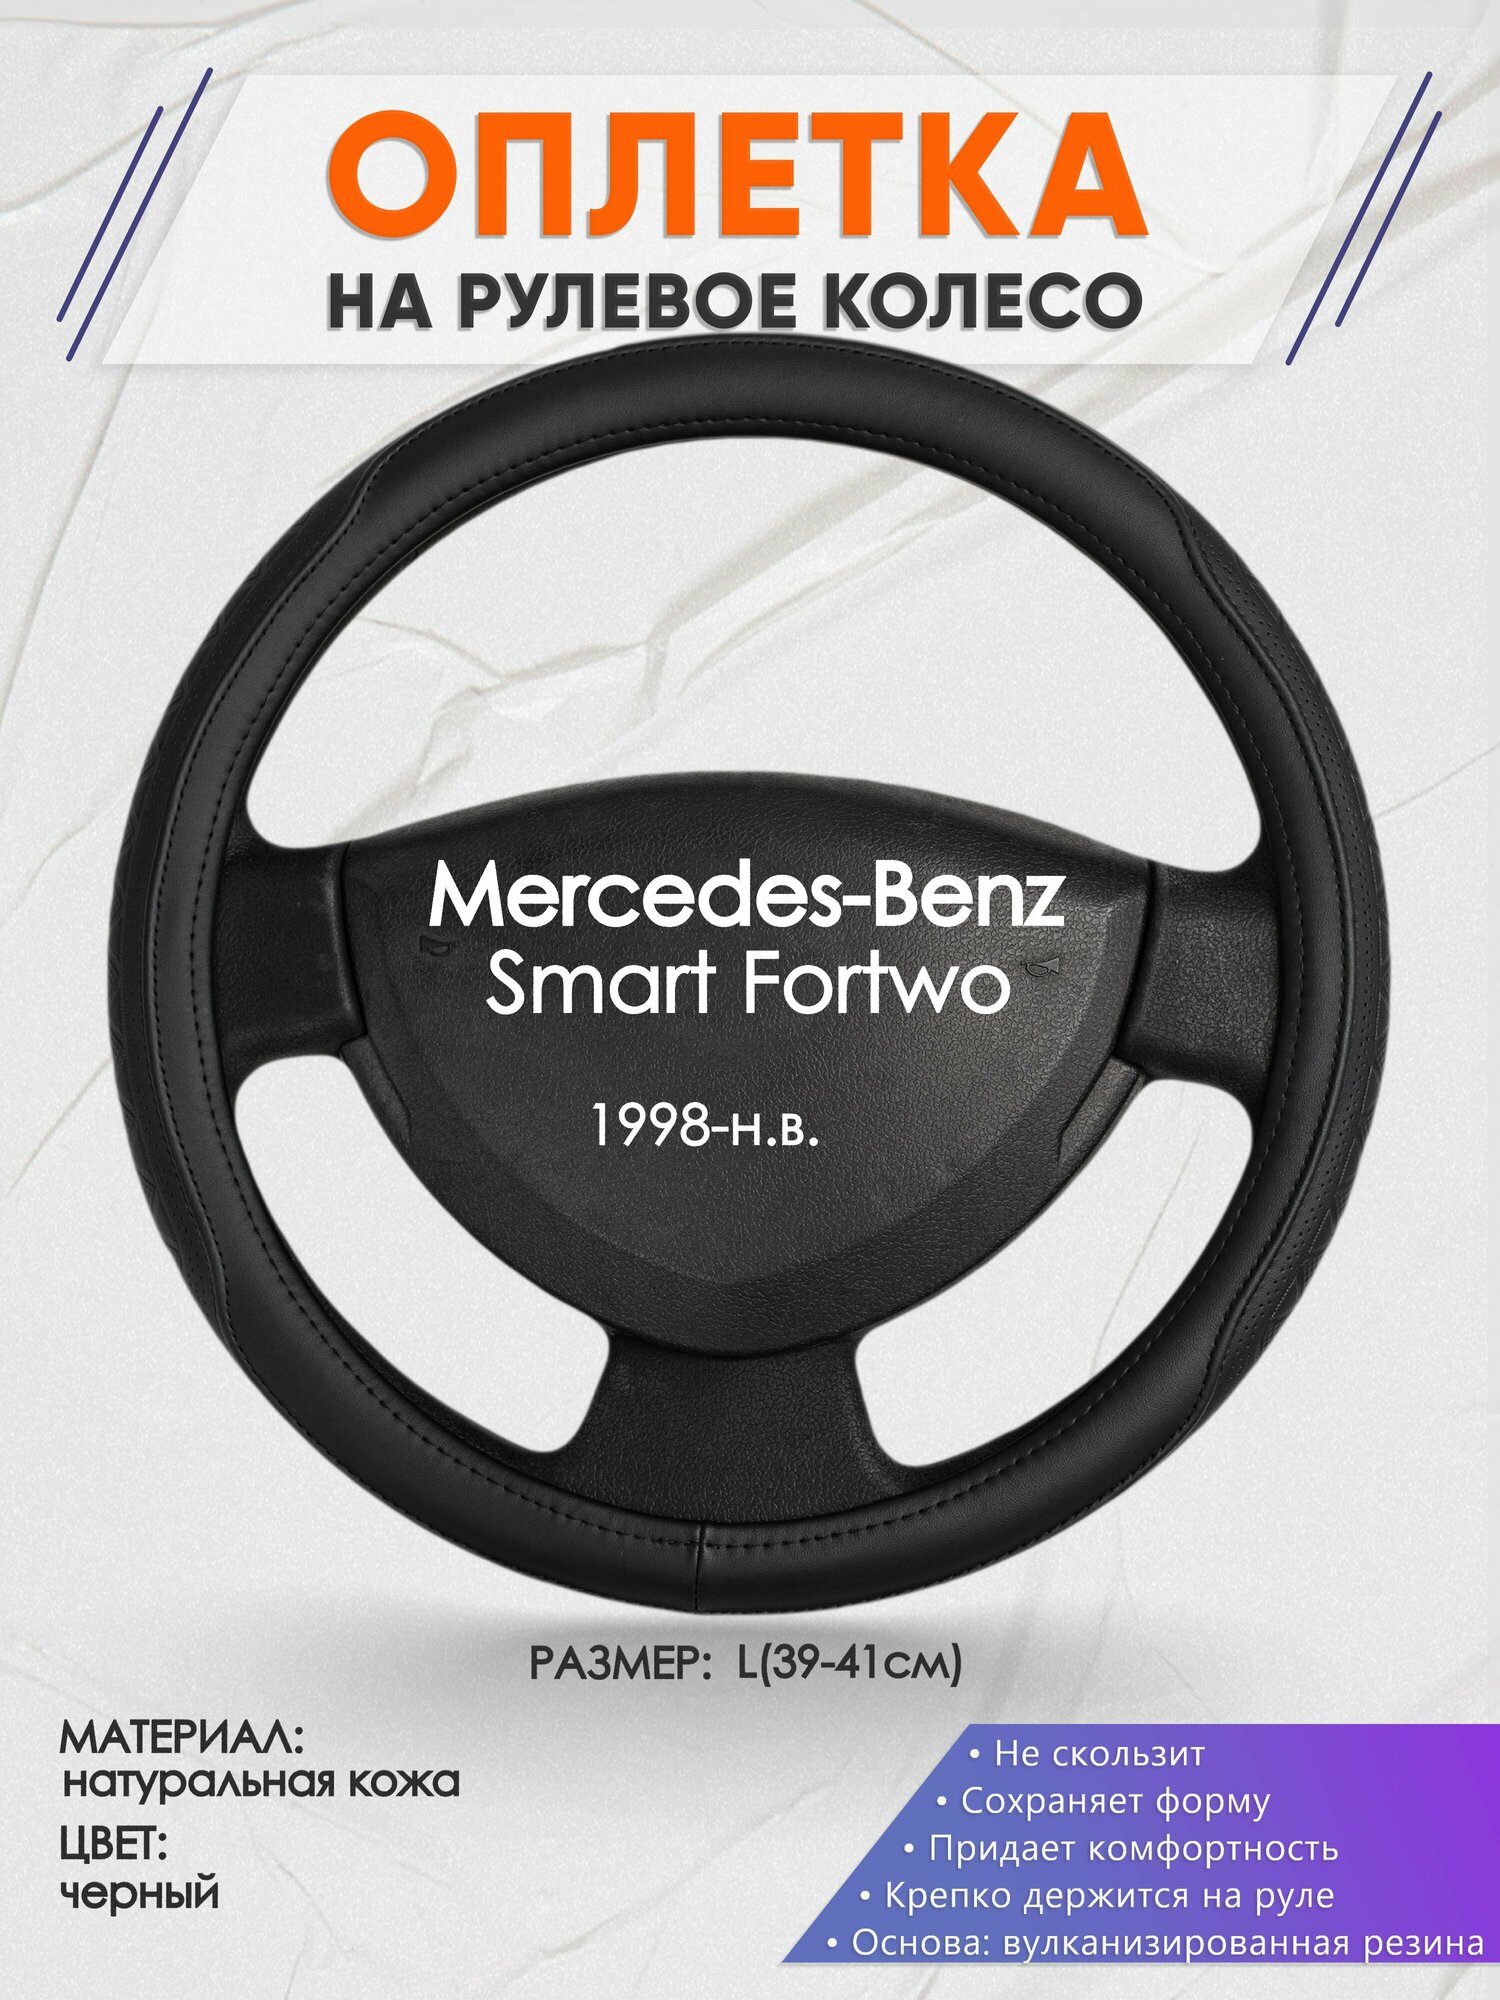 Оплетка на руль для Mercedes-Benz Smart Fortwo(Мерседес Бенц Смарт Форту) 1998-н. в L(39-41см) Натуральная кожа 89